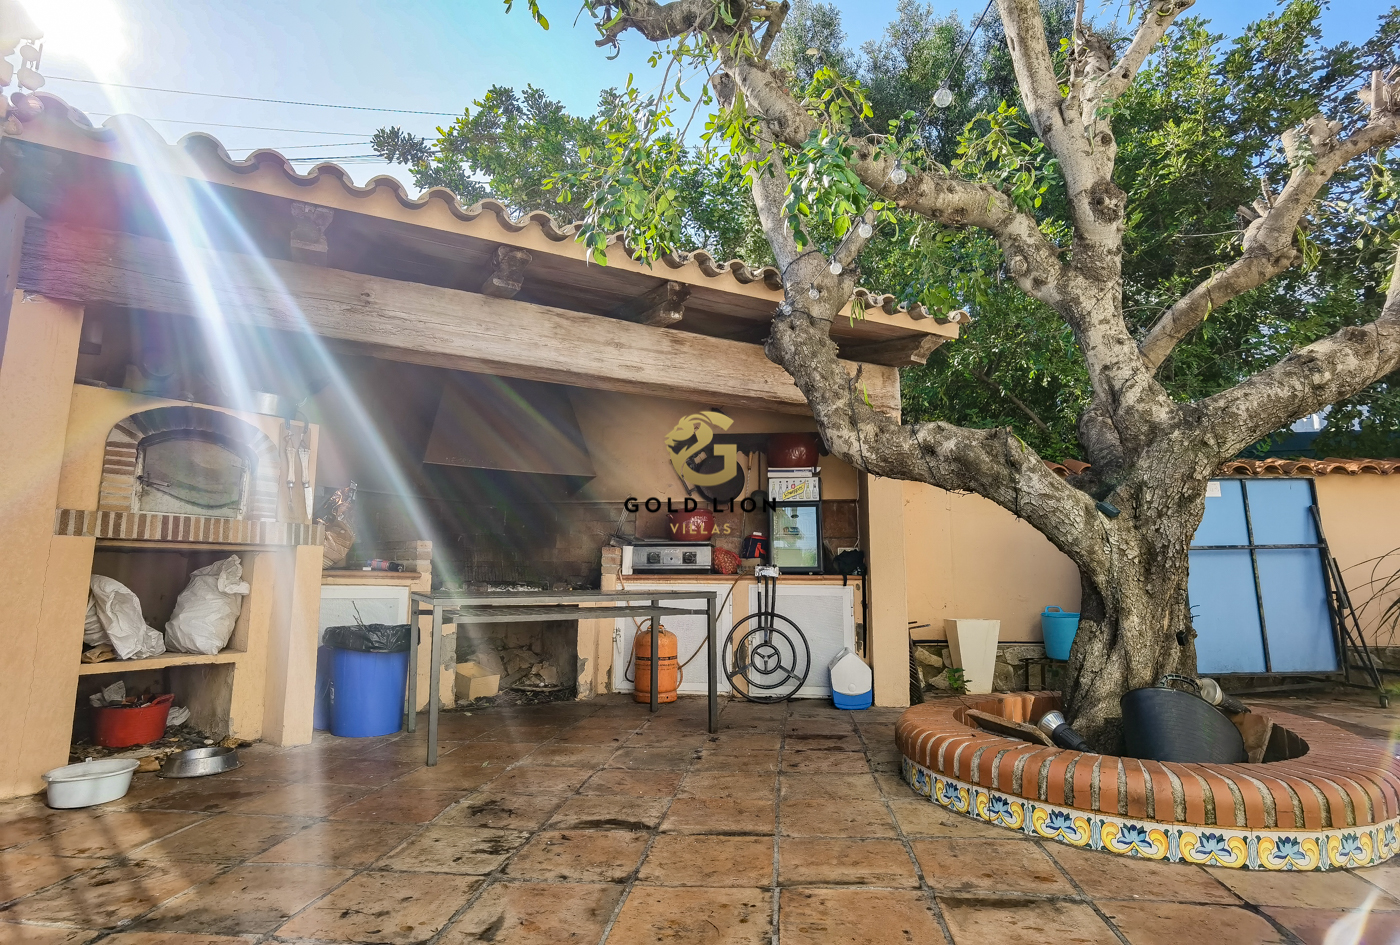 Villa zu verkaufen in der Gegend von Playa Marineta Cassiana, Denia